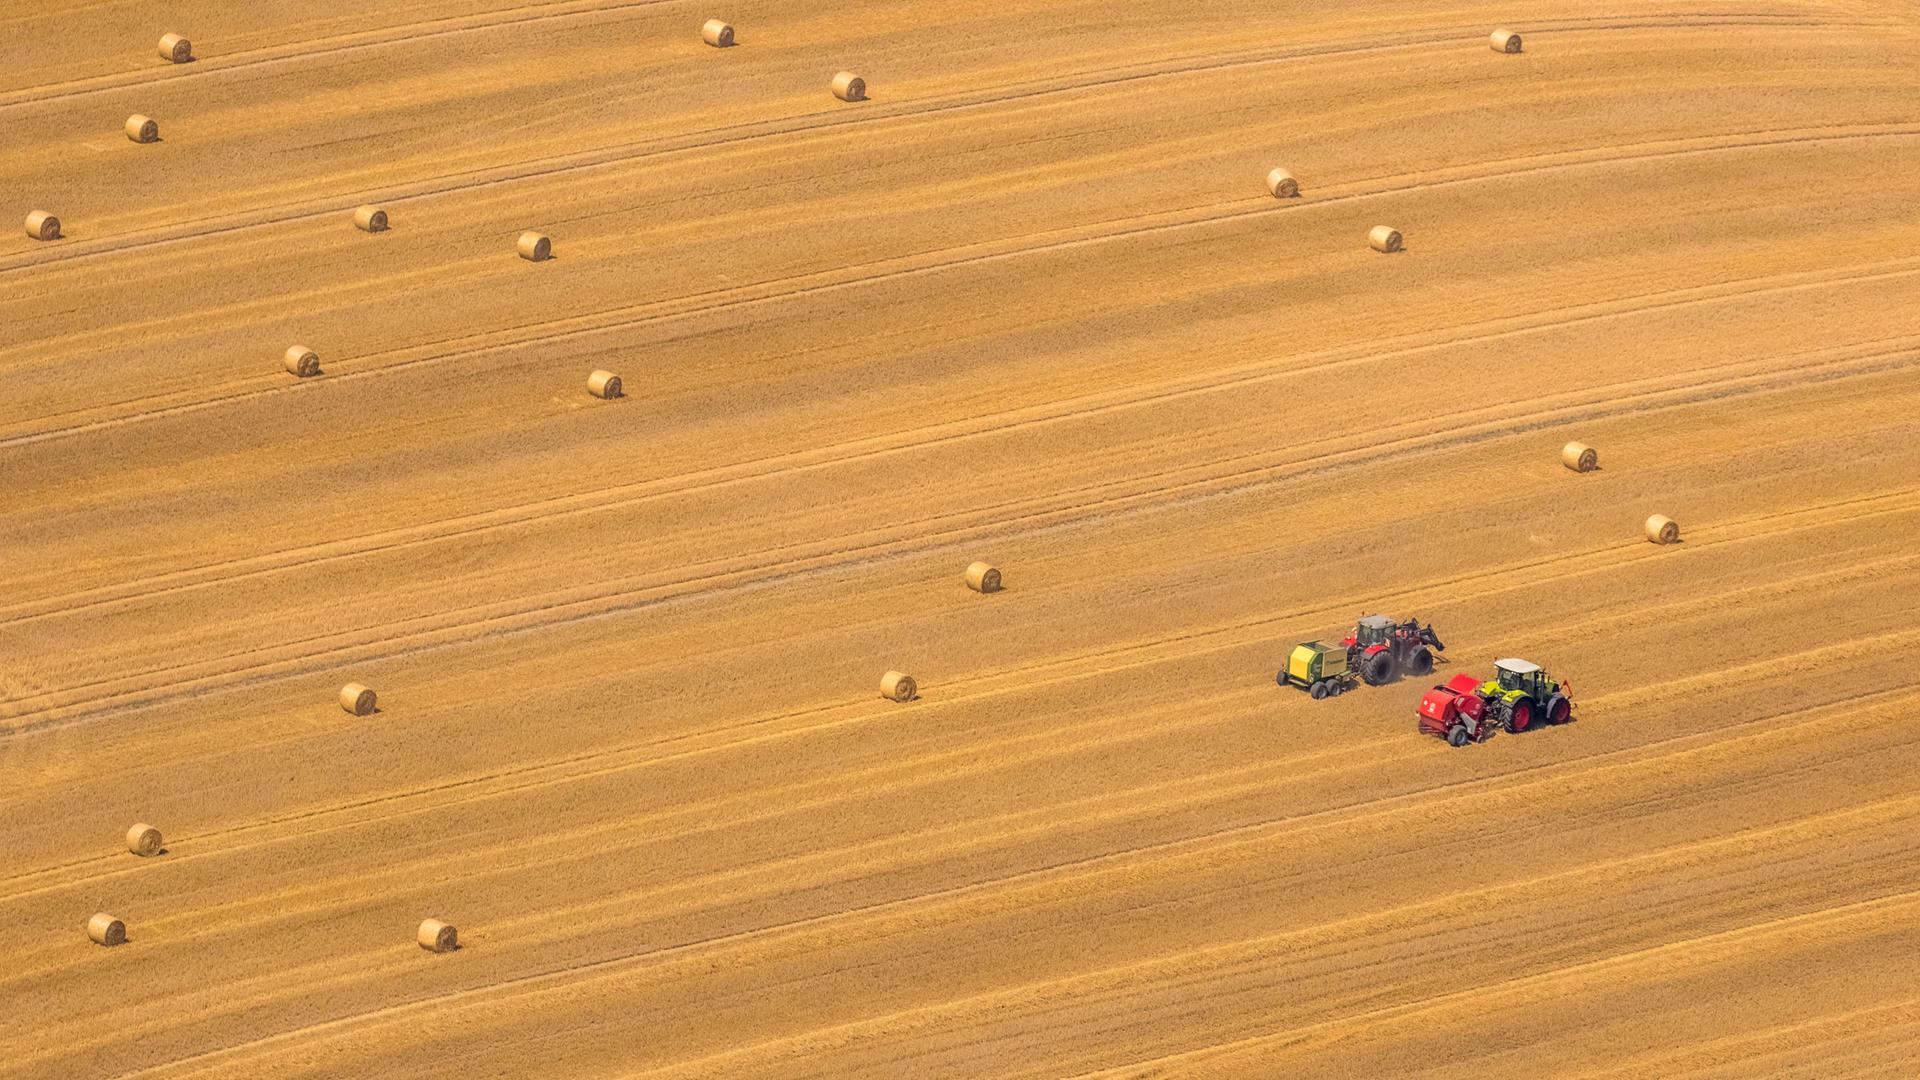 Getreidernte auf Feldern in Neukalen, 27.07.2016, Luftbild, Deutschland, Mecklenburg-Vorpommern